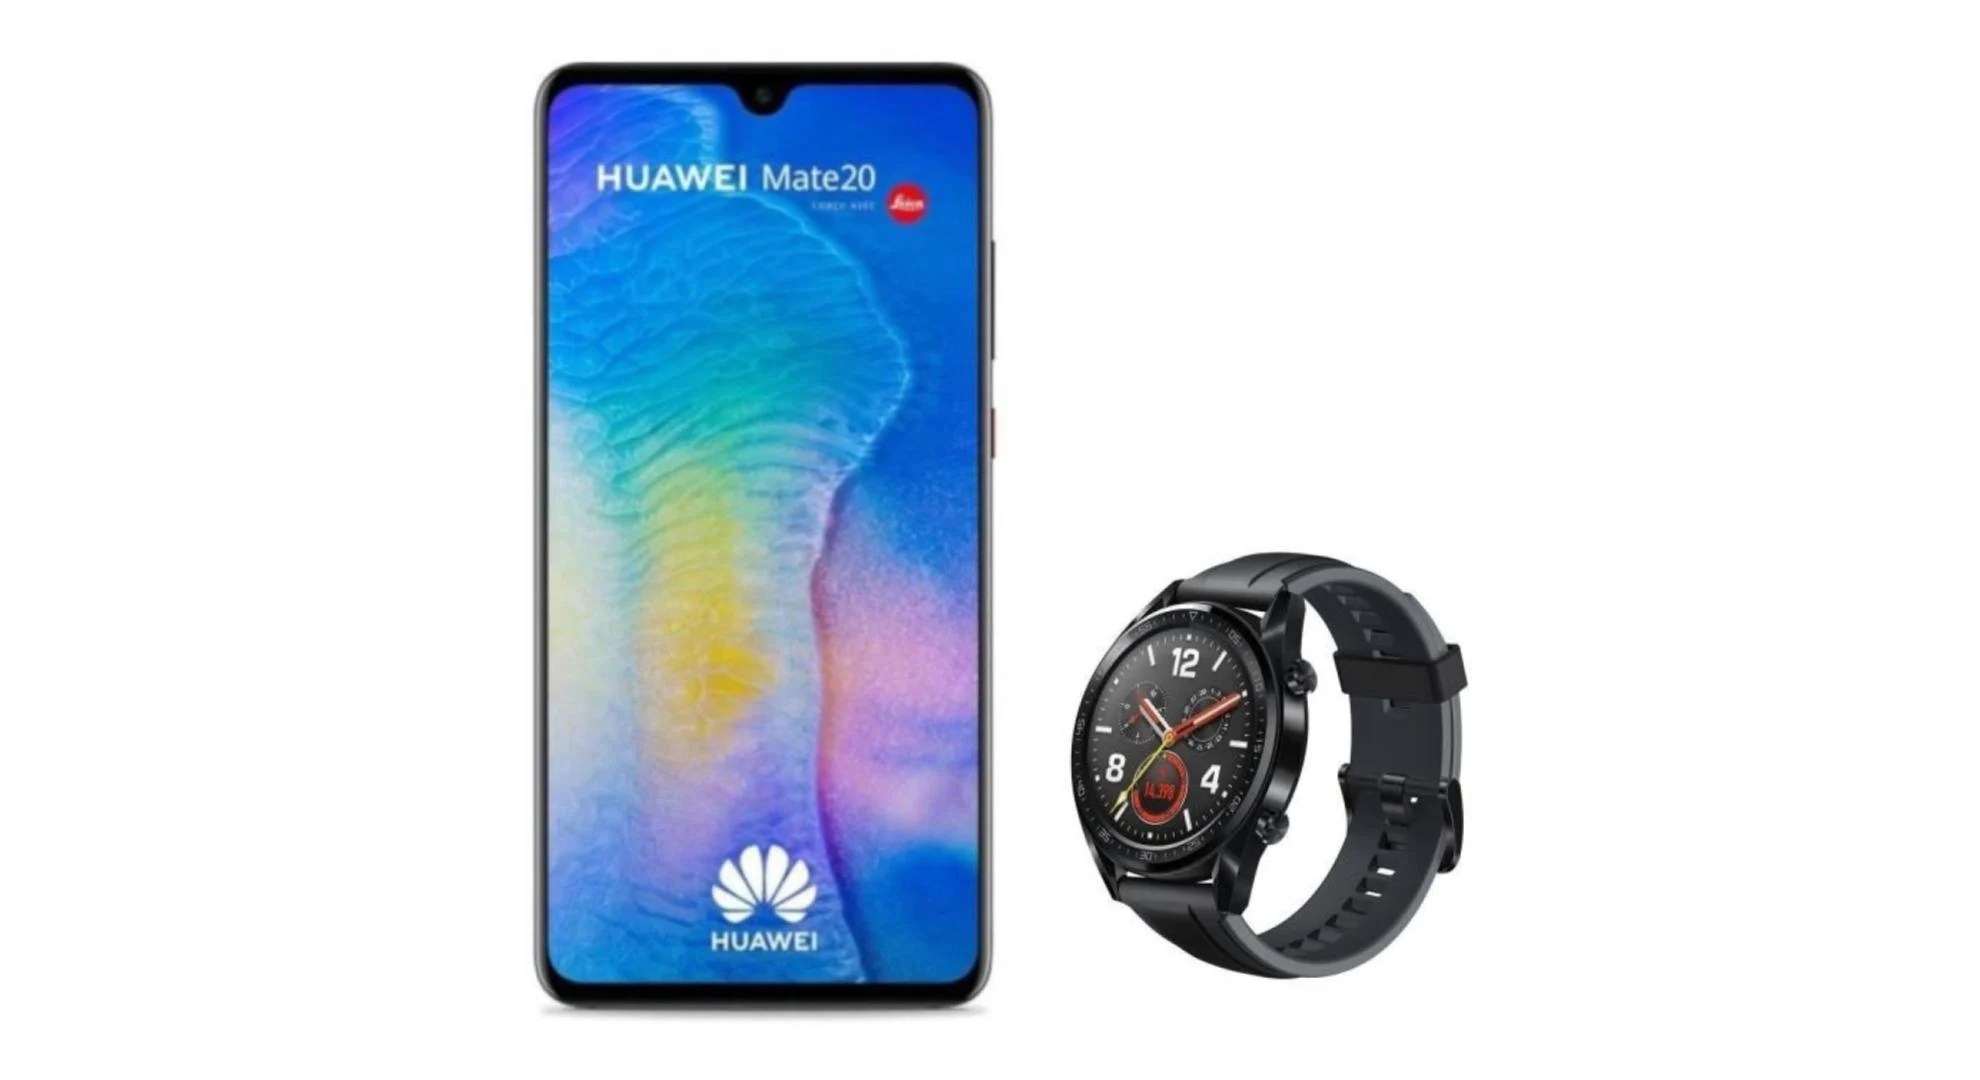 Le Mate 20 passe à 369 euros avec une montre Huawei Watch GT en cadeau